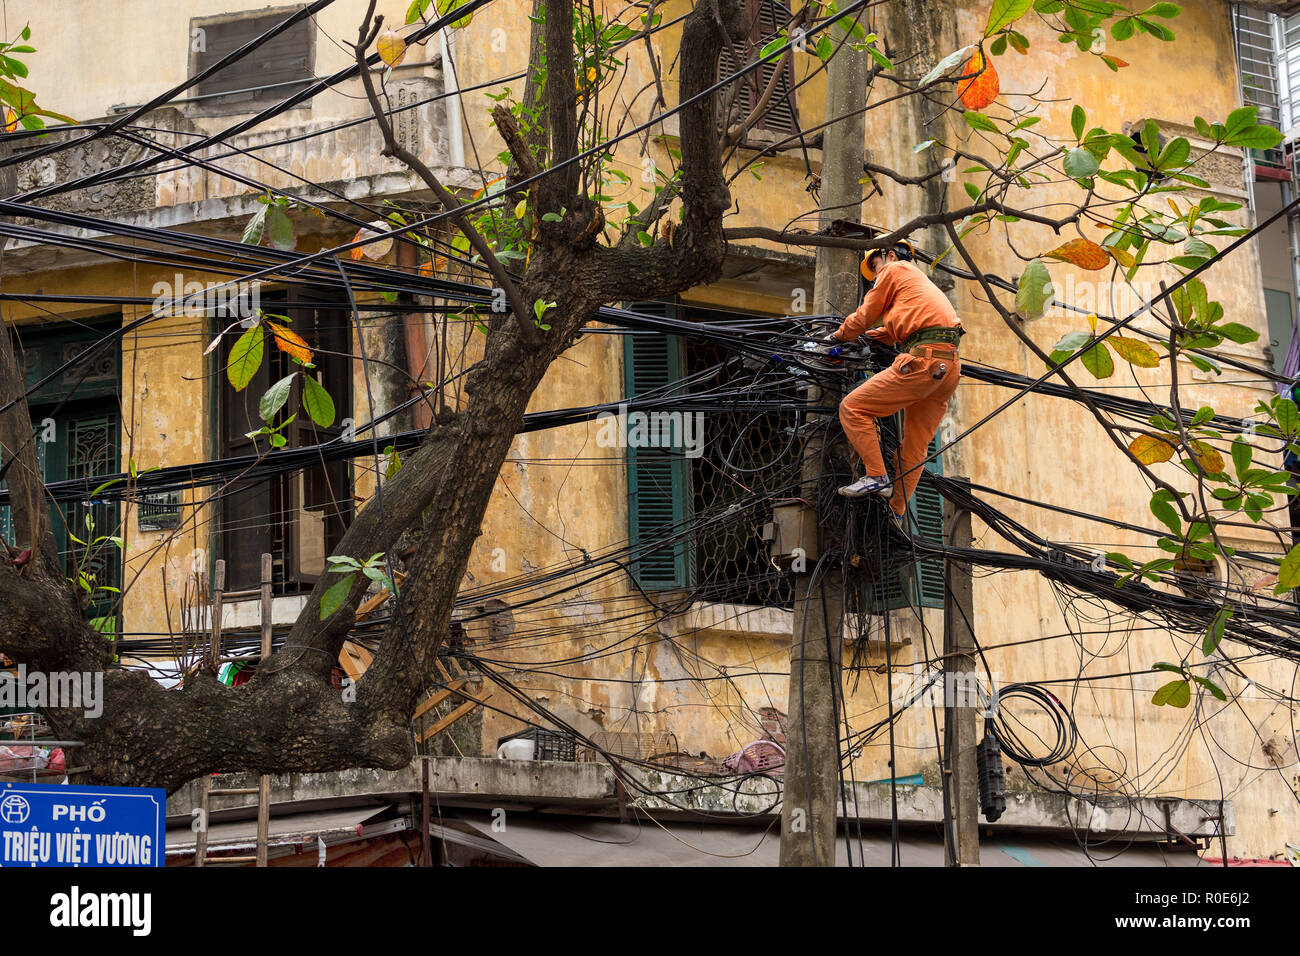 HANOI, Vietnam, 16 décembre 2014 : Un technicien est la réparation ou vérification de la réseau électrique en désordre dans la ville de Hanoi, Vietnam Banque D'Images